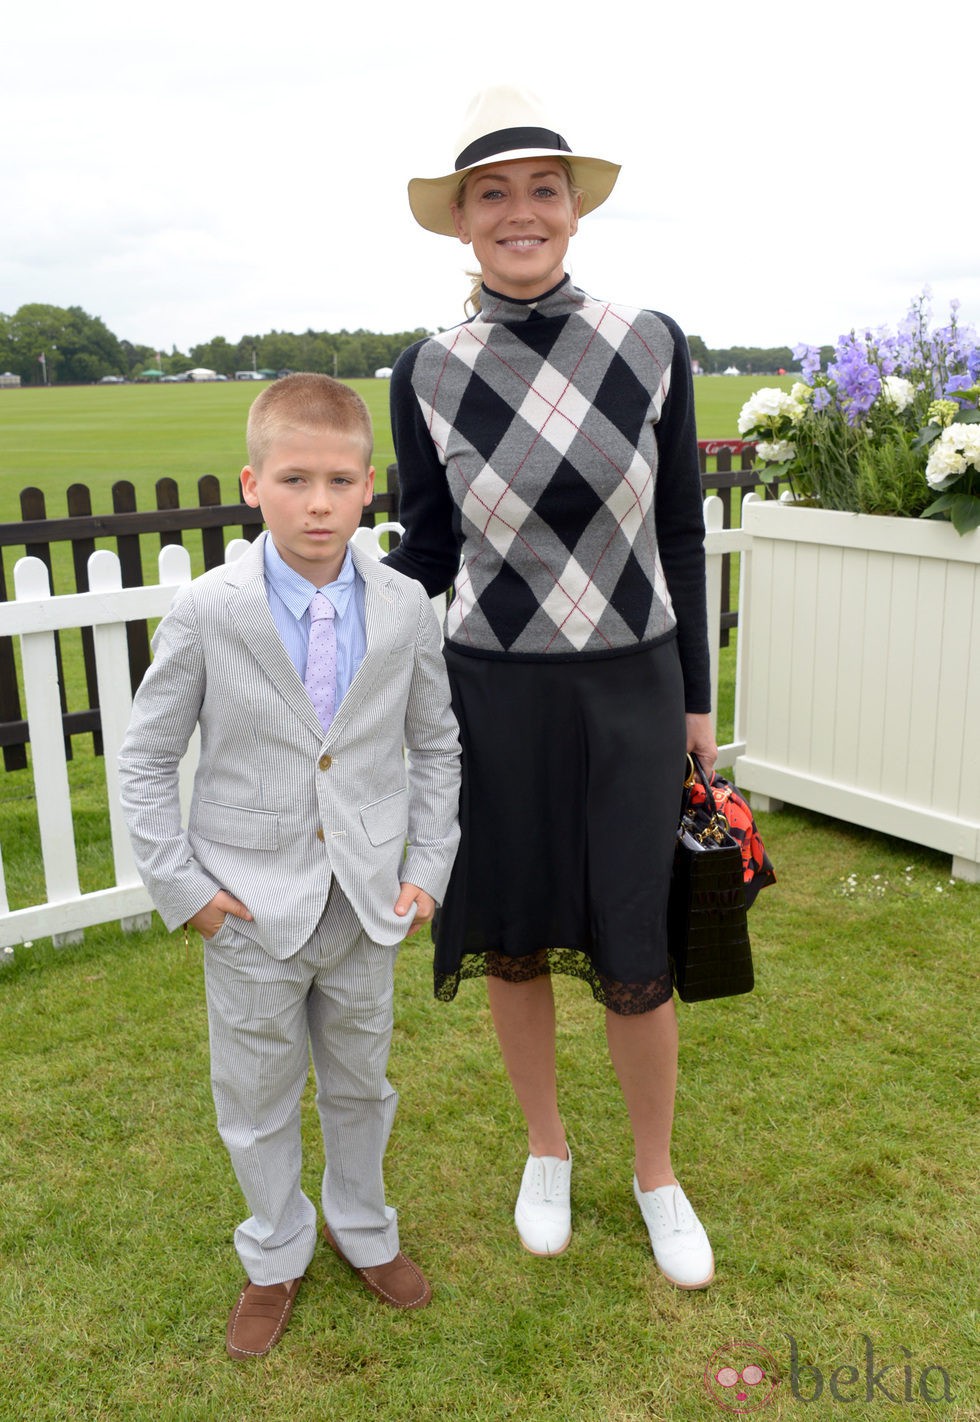 Sharon Stone y su hijo en la Copa de la Reina de Polo